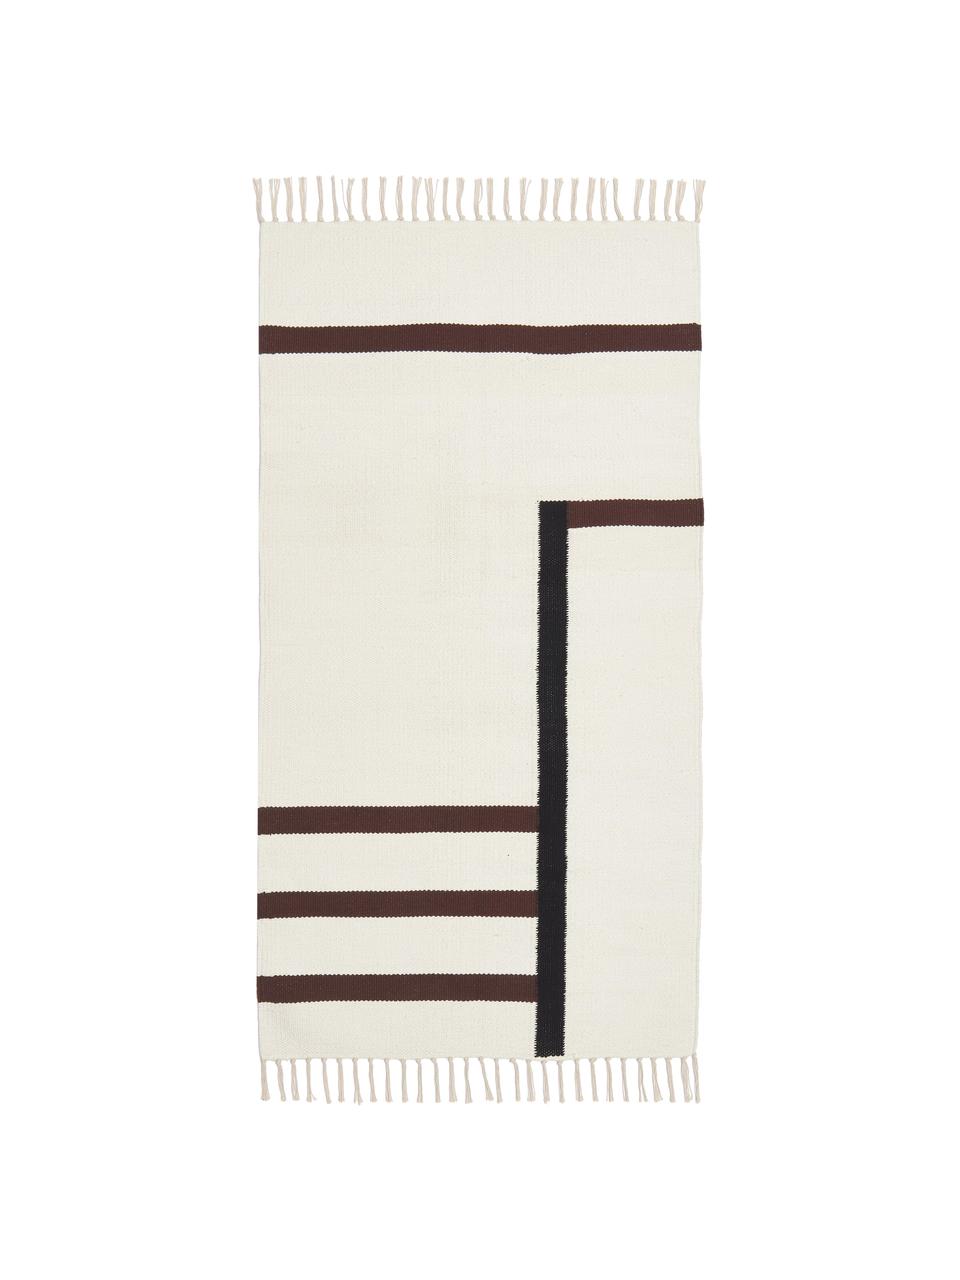 Ručně tkaný kelimový koberec Wyoming, 100 % bio bavlna, s certifikátem GOTS, Krémově bílá, hnědá, černá, Š 80 cm, D 150 cm (velikost XS)